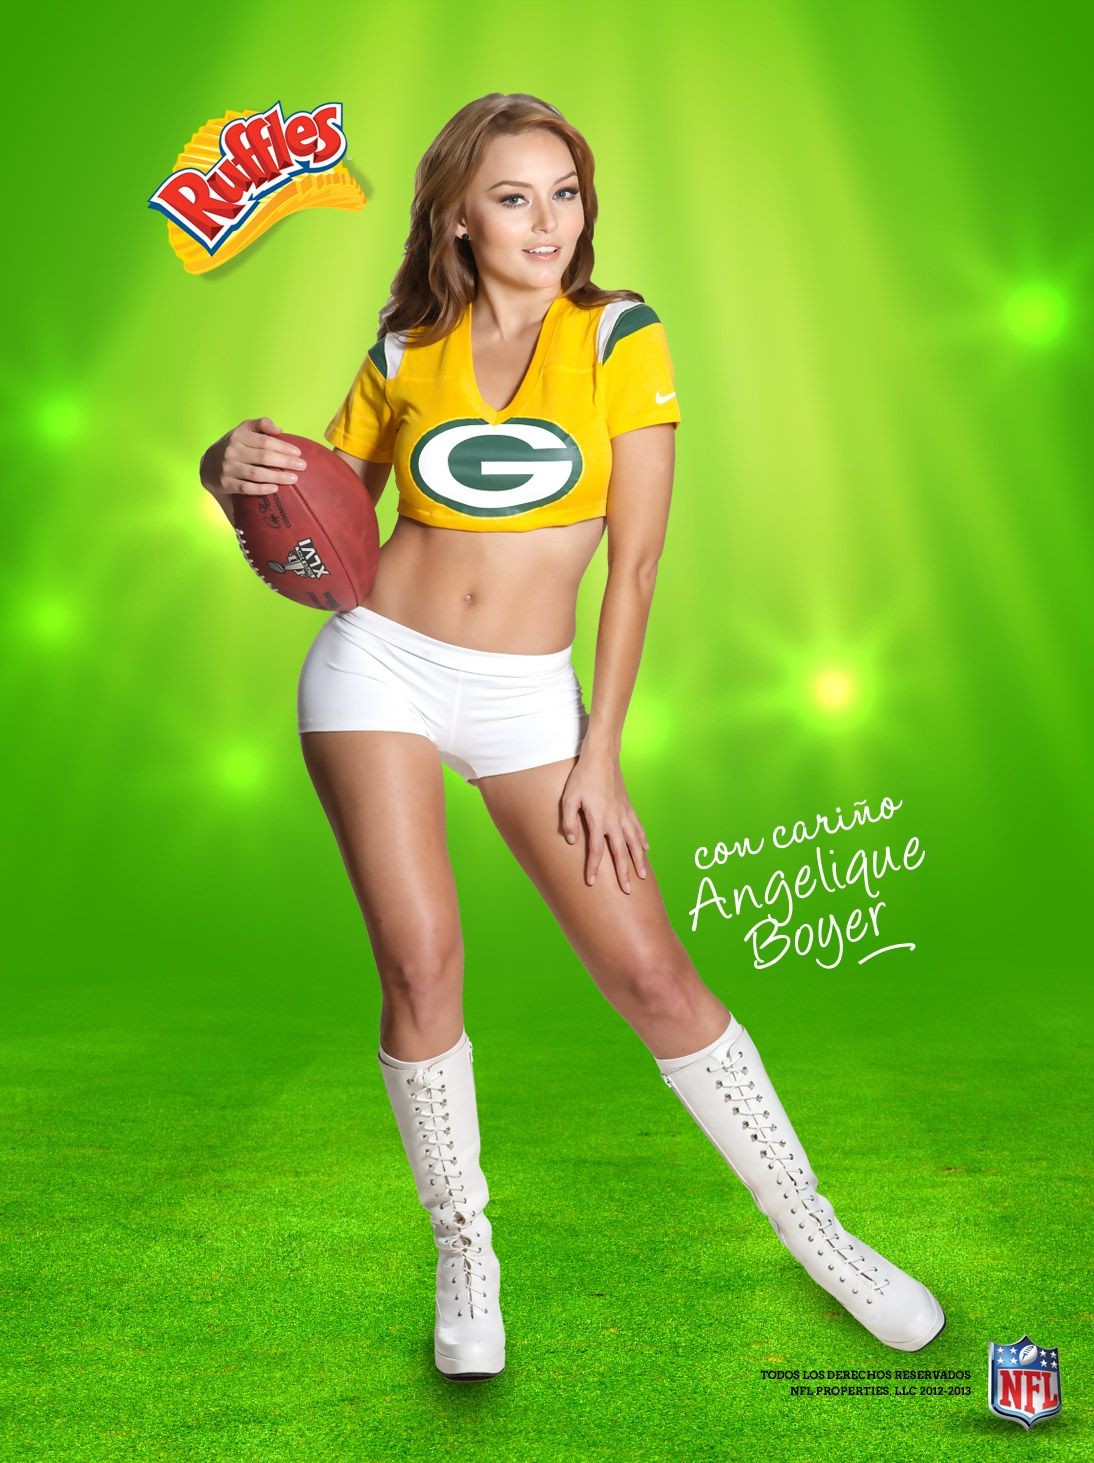 Angelique boyer en sosies de maillots sexy dans des promos de la NFL
 #75243013